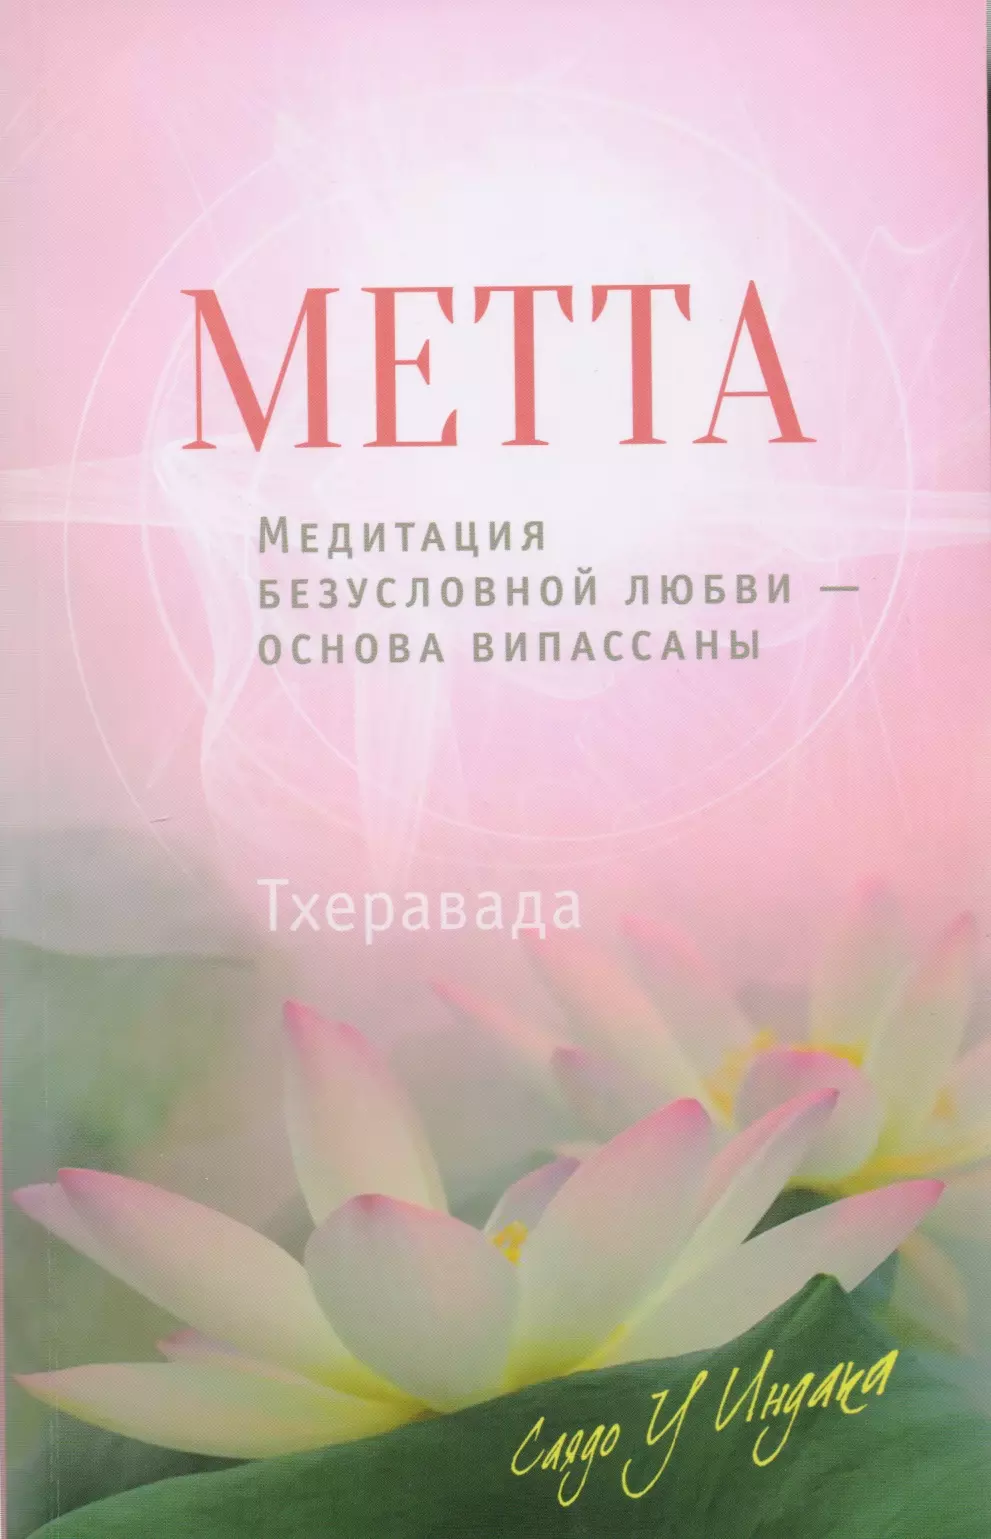 Саядо У Индака Метта. Медитация безусловной любви — основа випассаны новая книга по медитации поэтапное руководство по традиционной практике